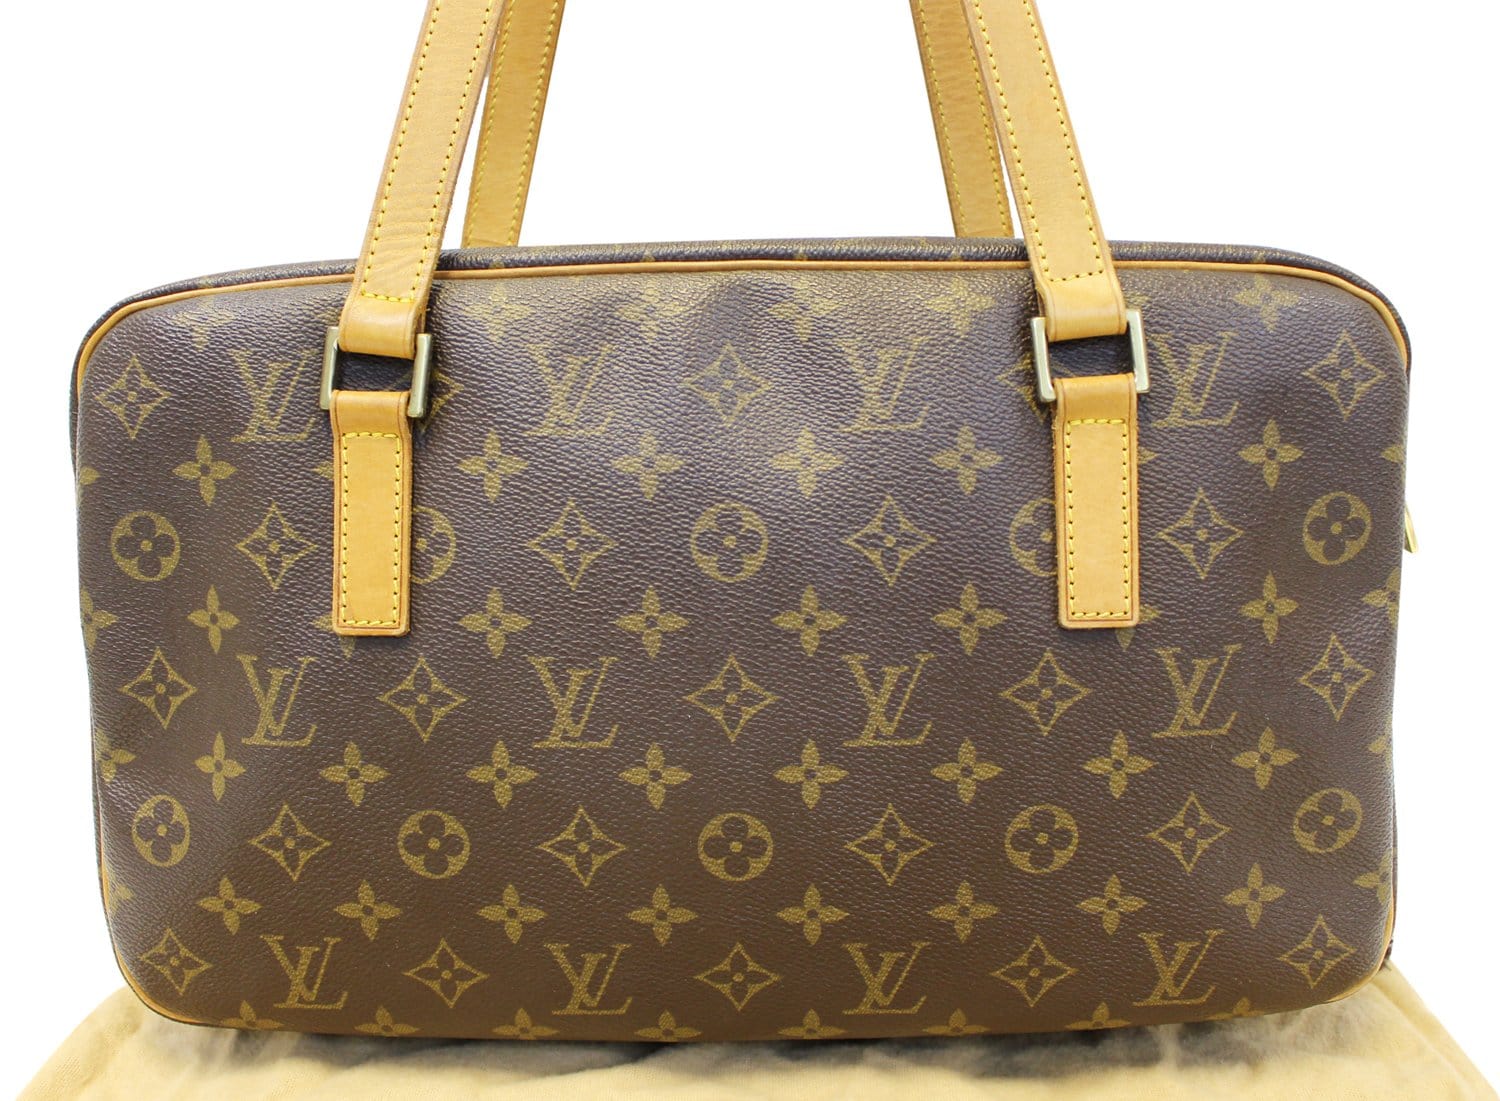 Louis Vuitton Cite Gm Shoulder Bag